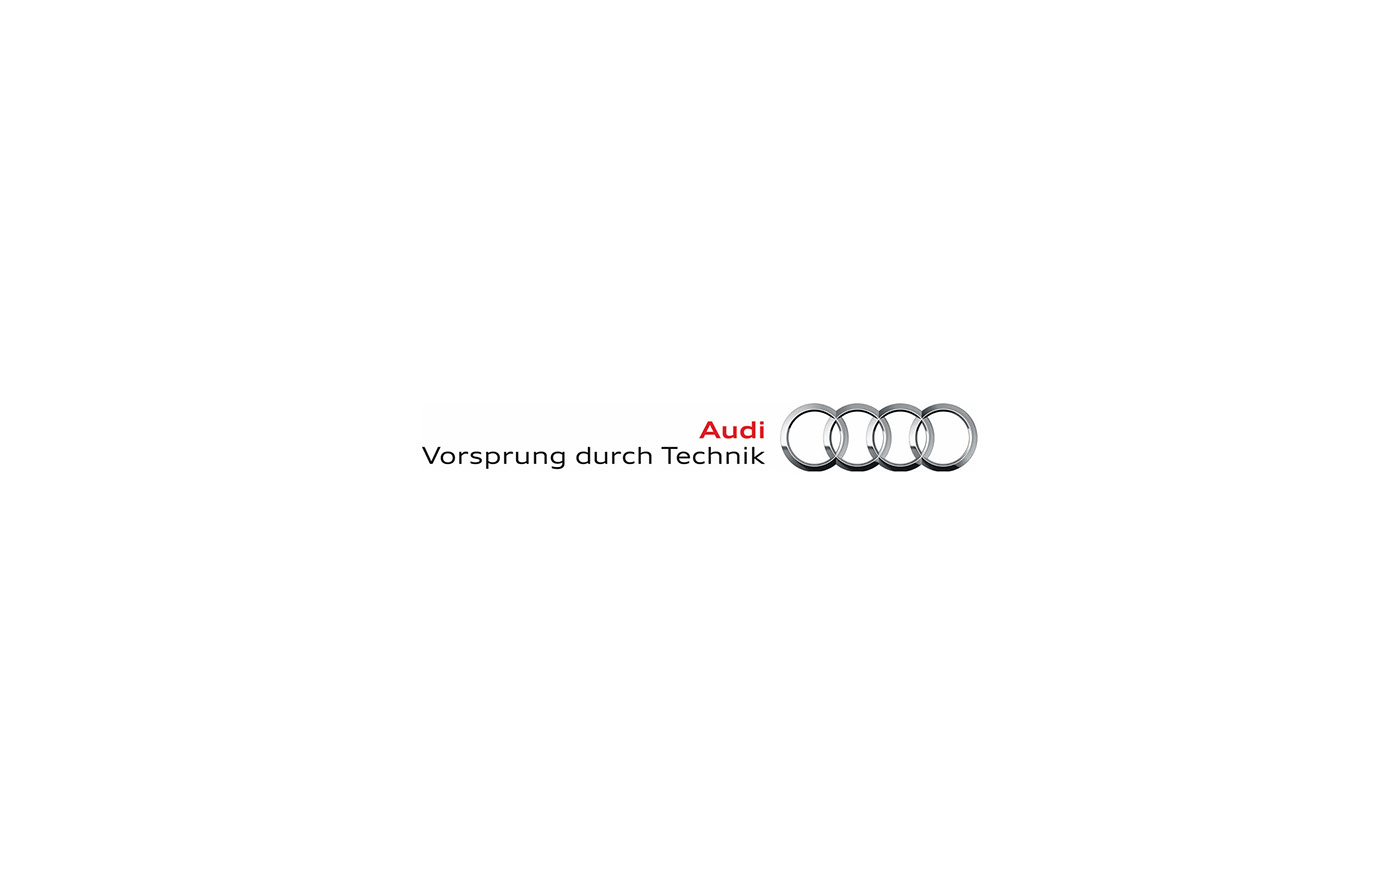 Audi le mans daniel platek car design future vision